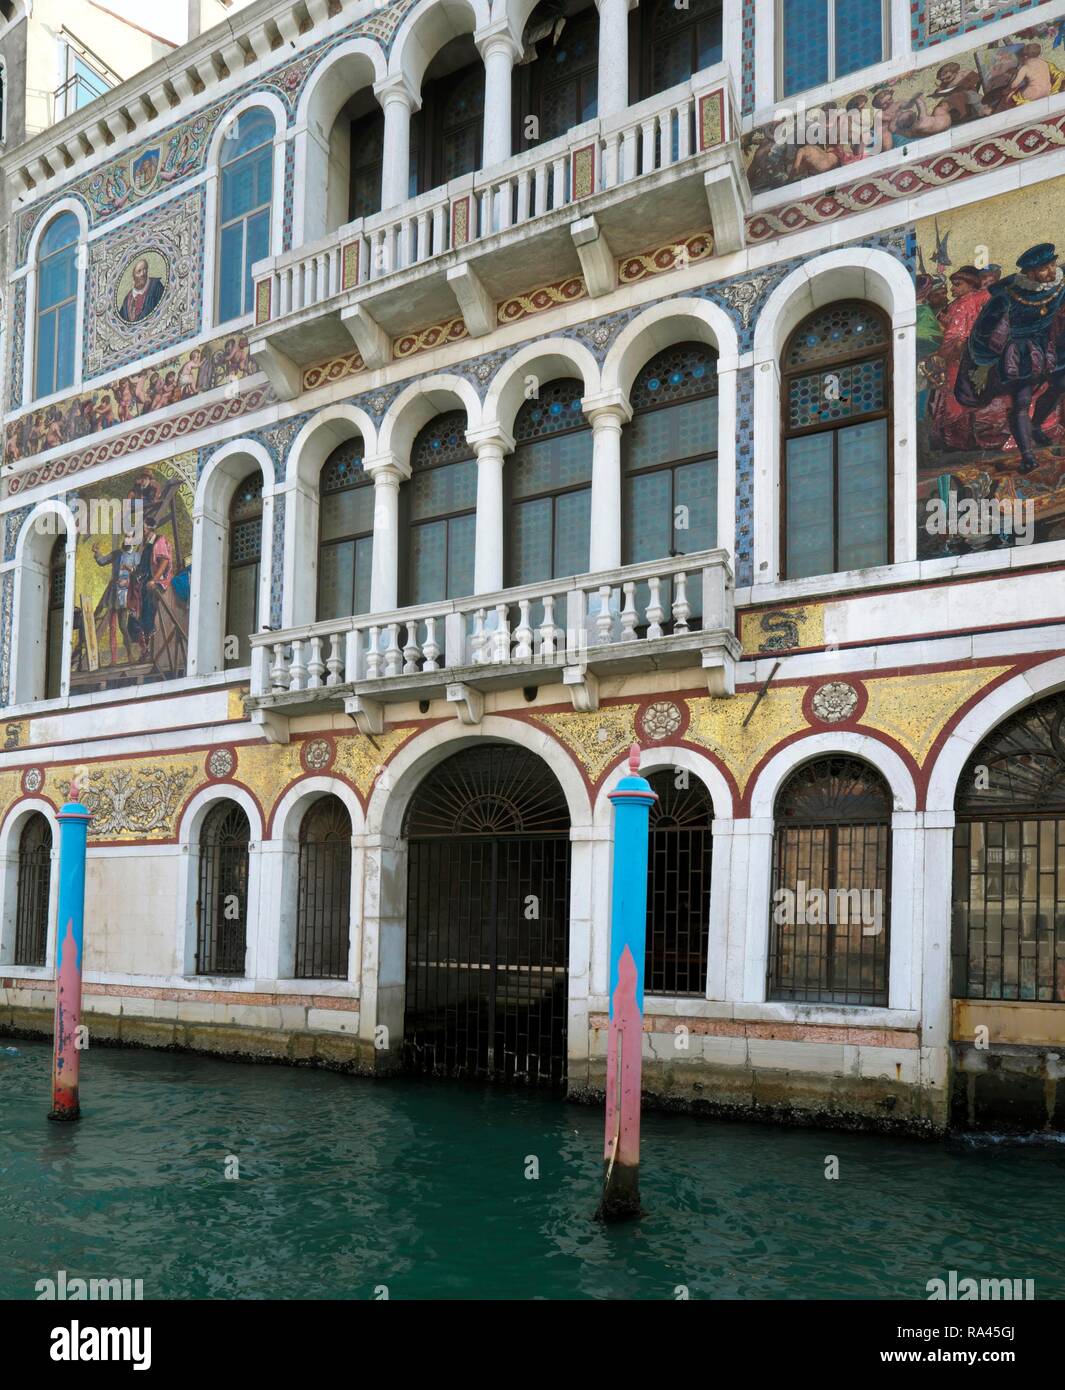 Facade of Palazzo Barbarigo with mosaic paintings, Canal Grande, Venice, Veneto, Italy Stock Photo